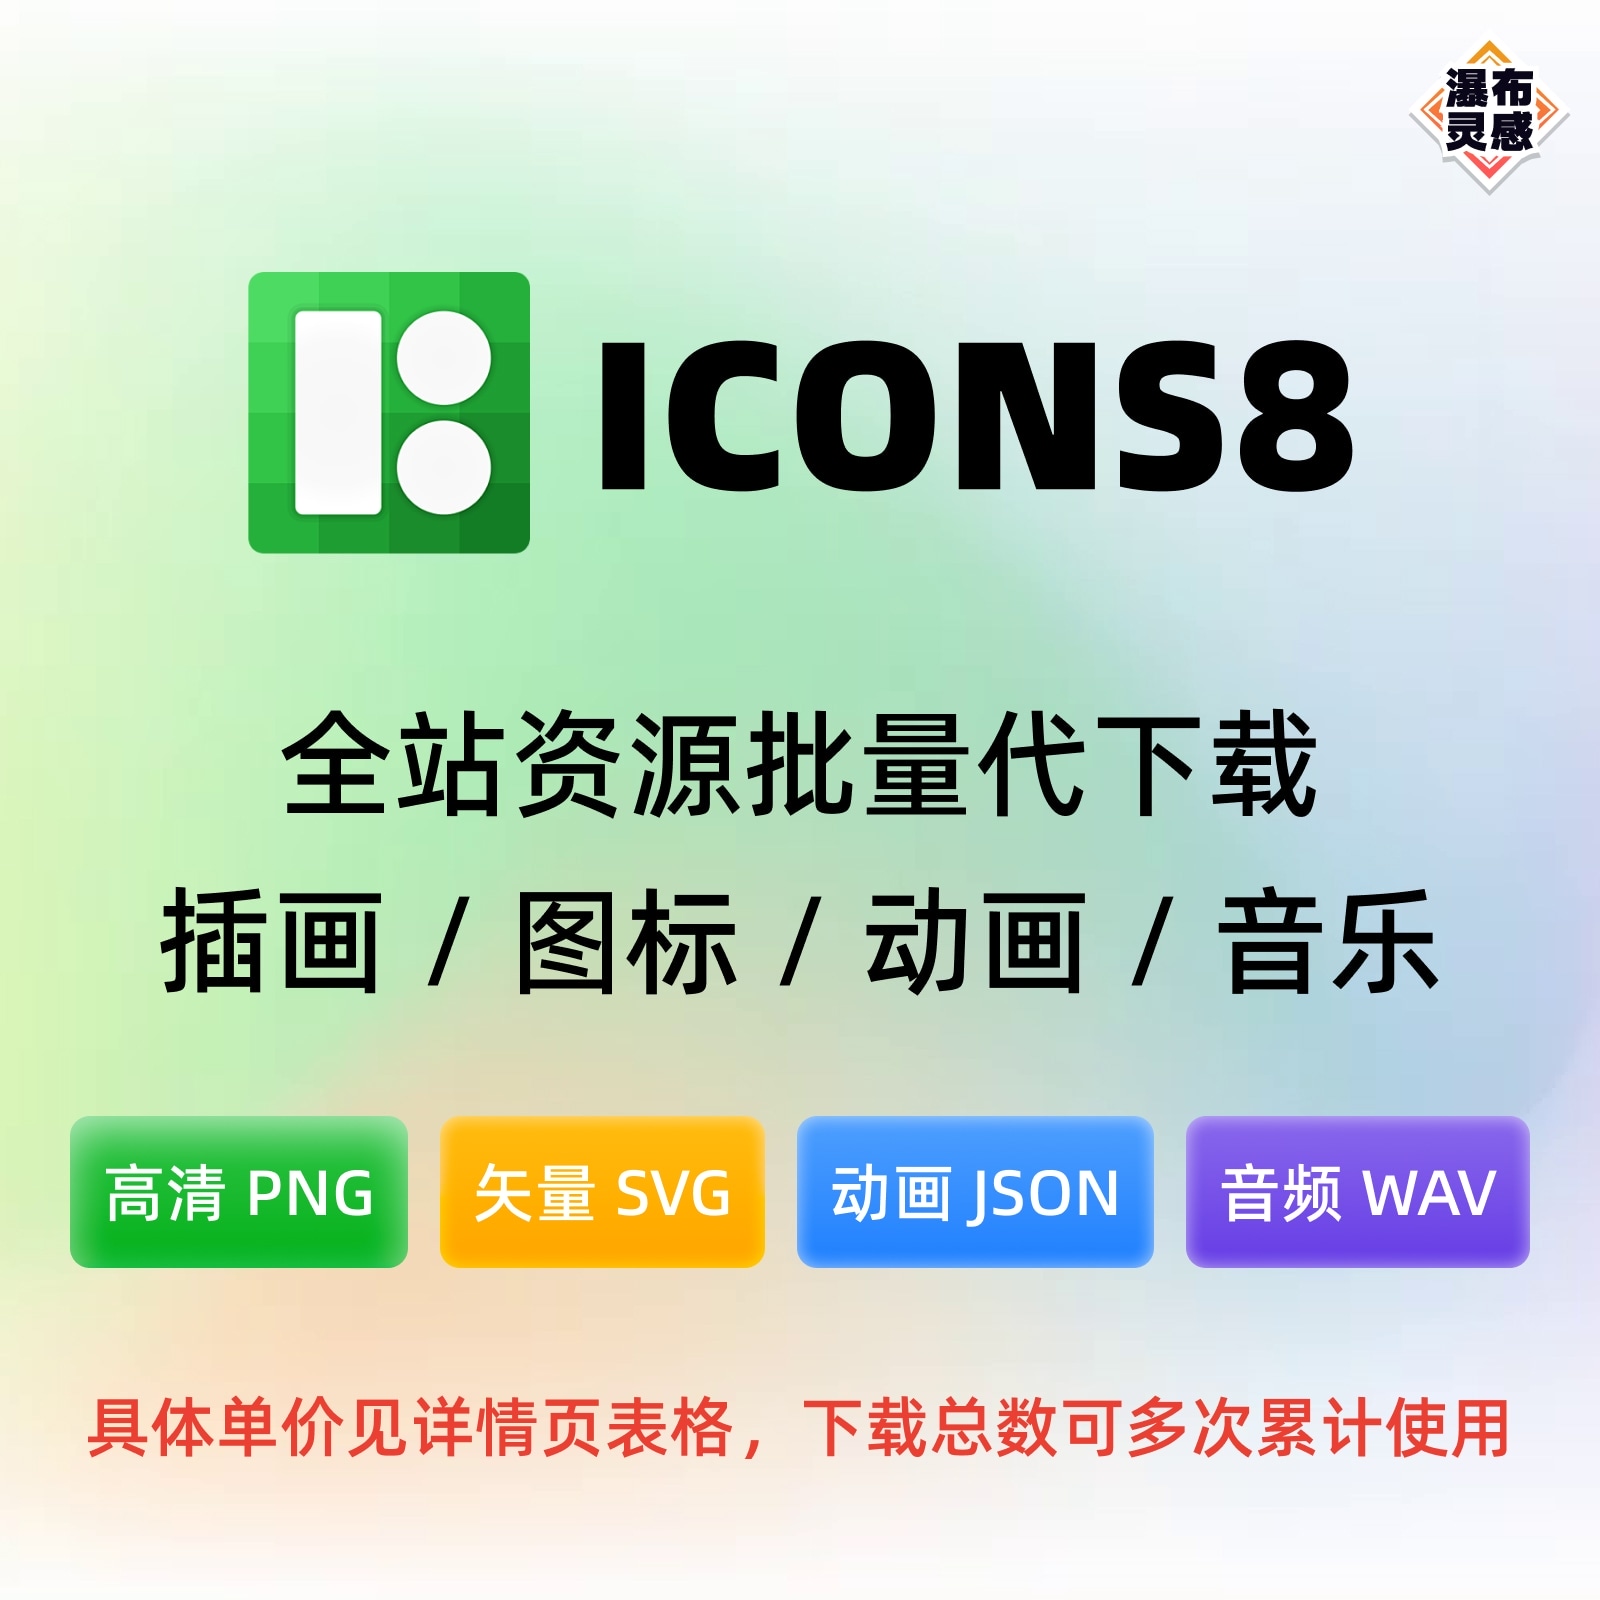 【代下载】Icons8 全站插画/图标/动画/音效 130万+资源 SVG PNG